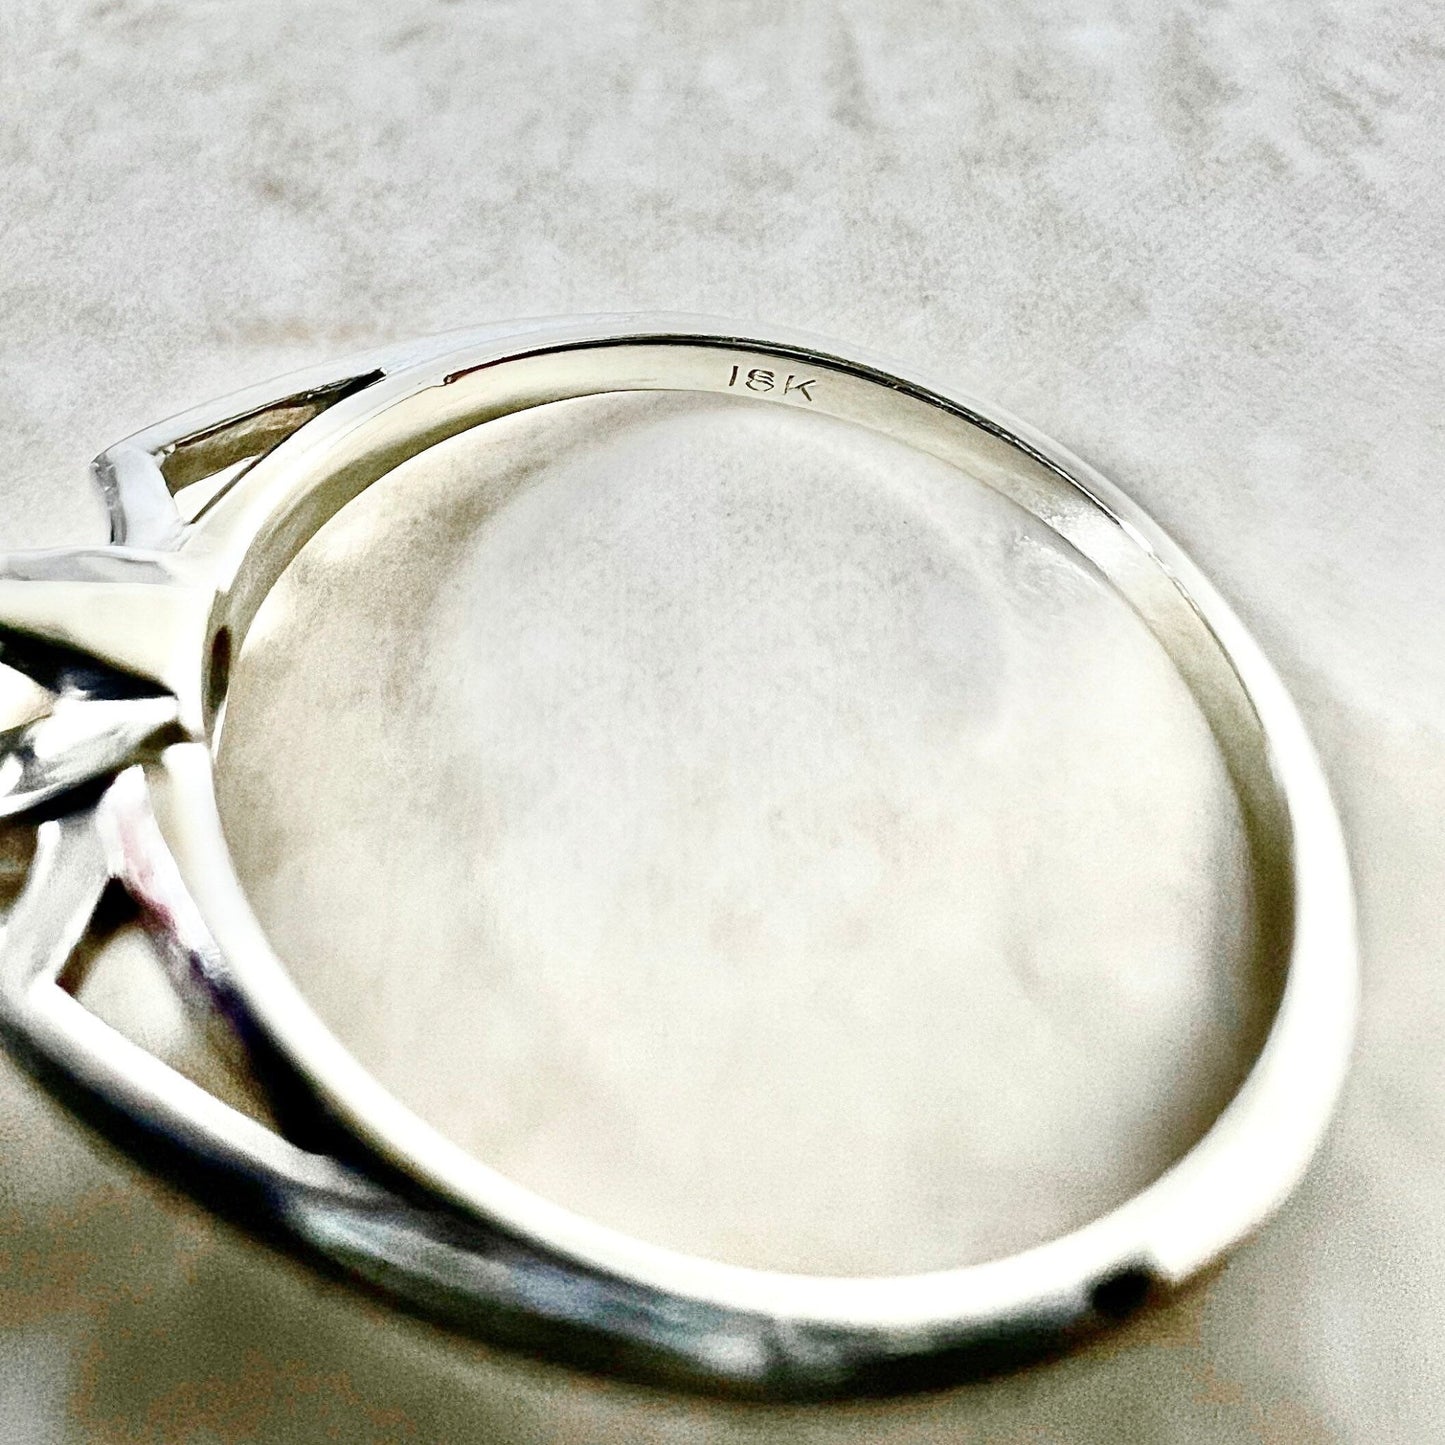 Vintage 18K Solitaire Diamond Ring - 18K White Gold Ring - Diamond Solitaire Rings - Diamond Engagement Ring - Wedding Ring - Promise Ring